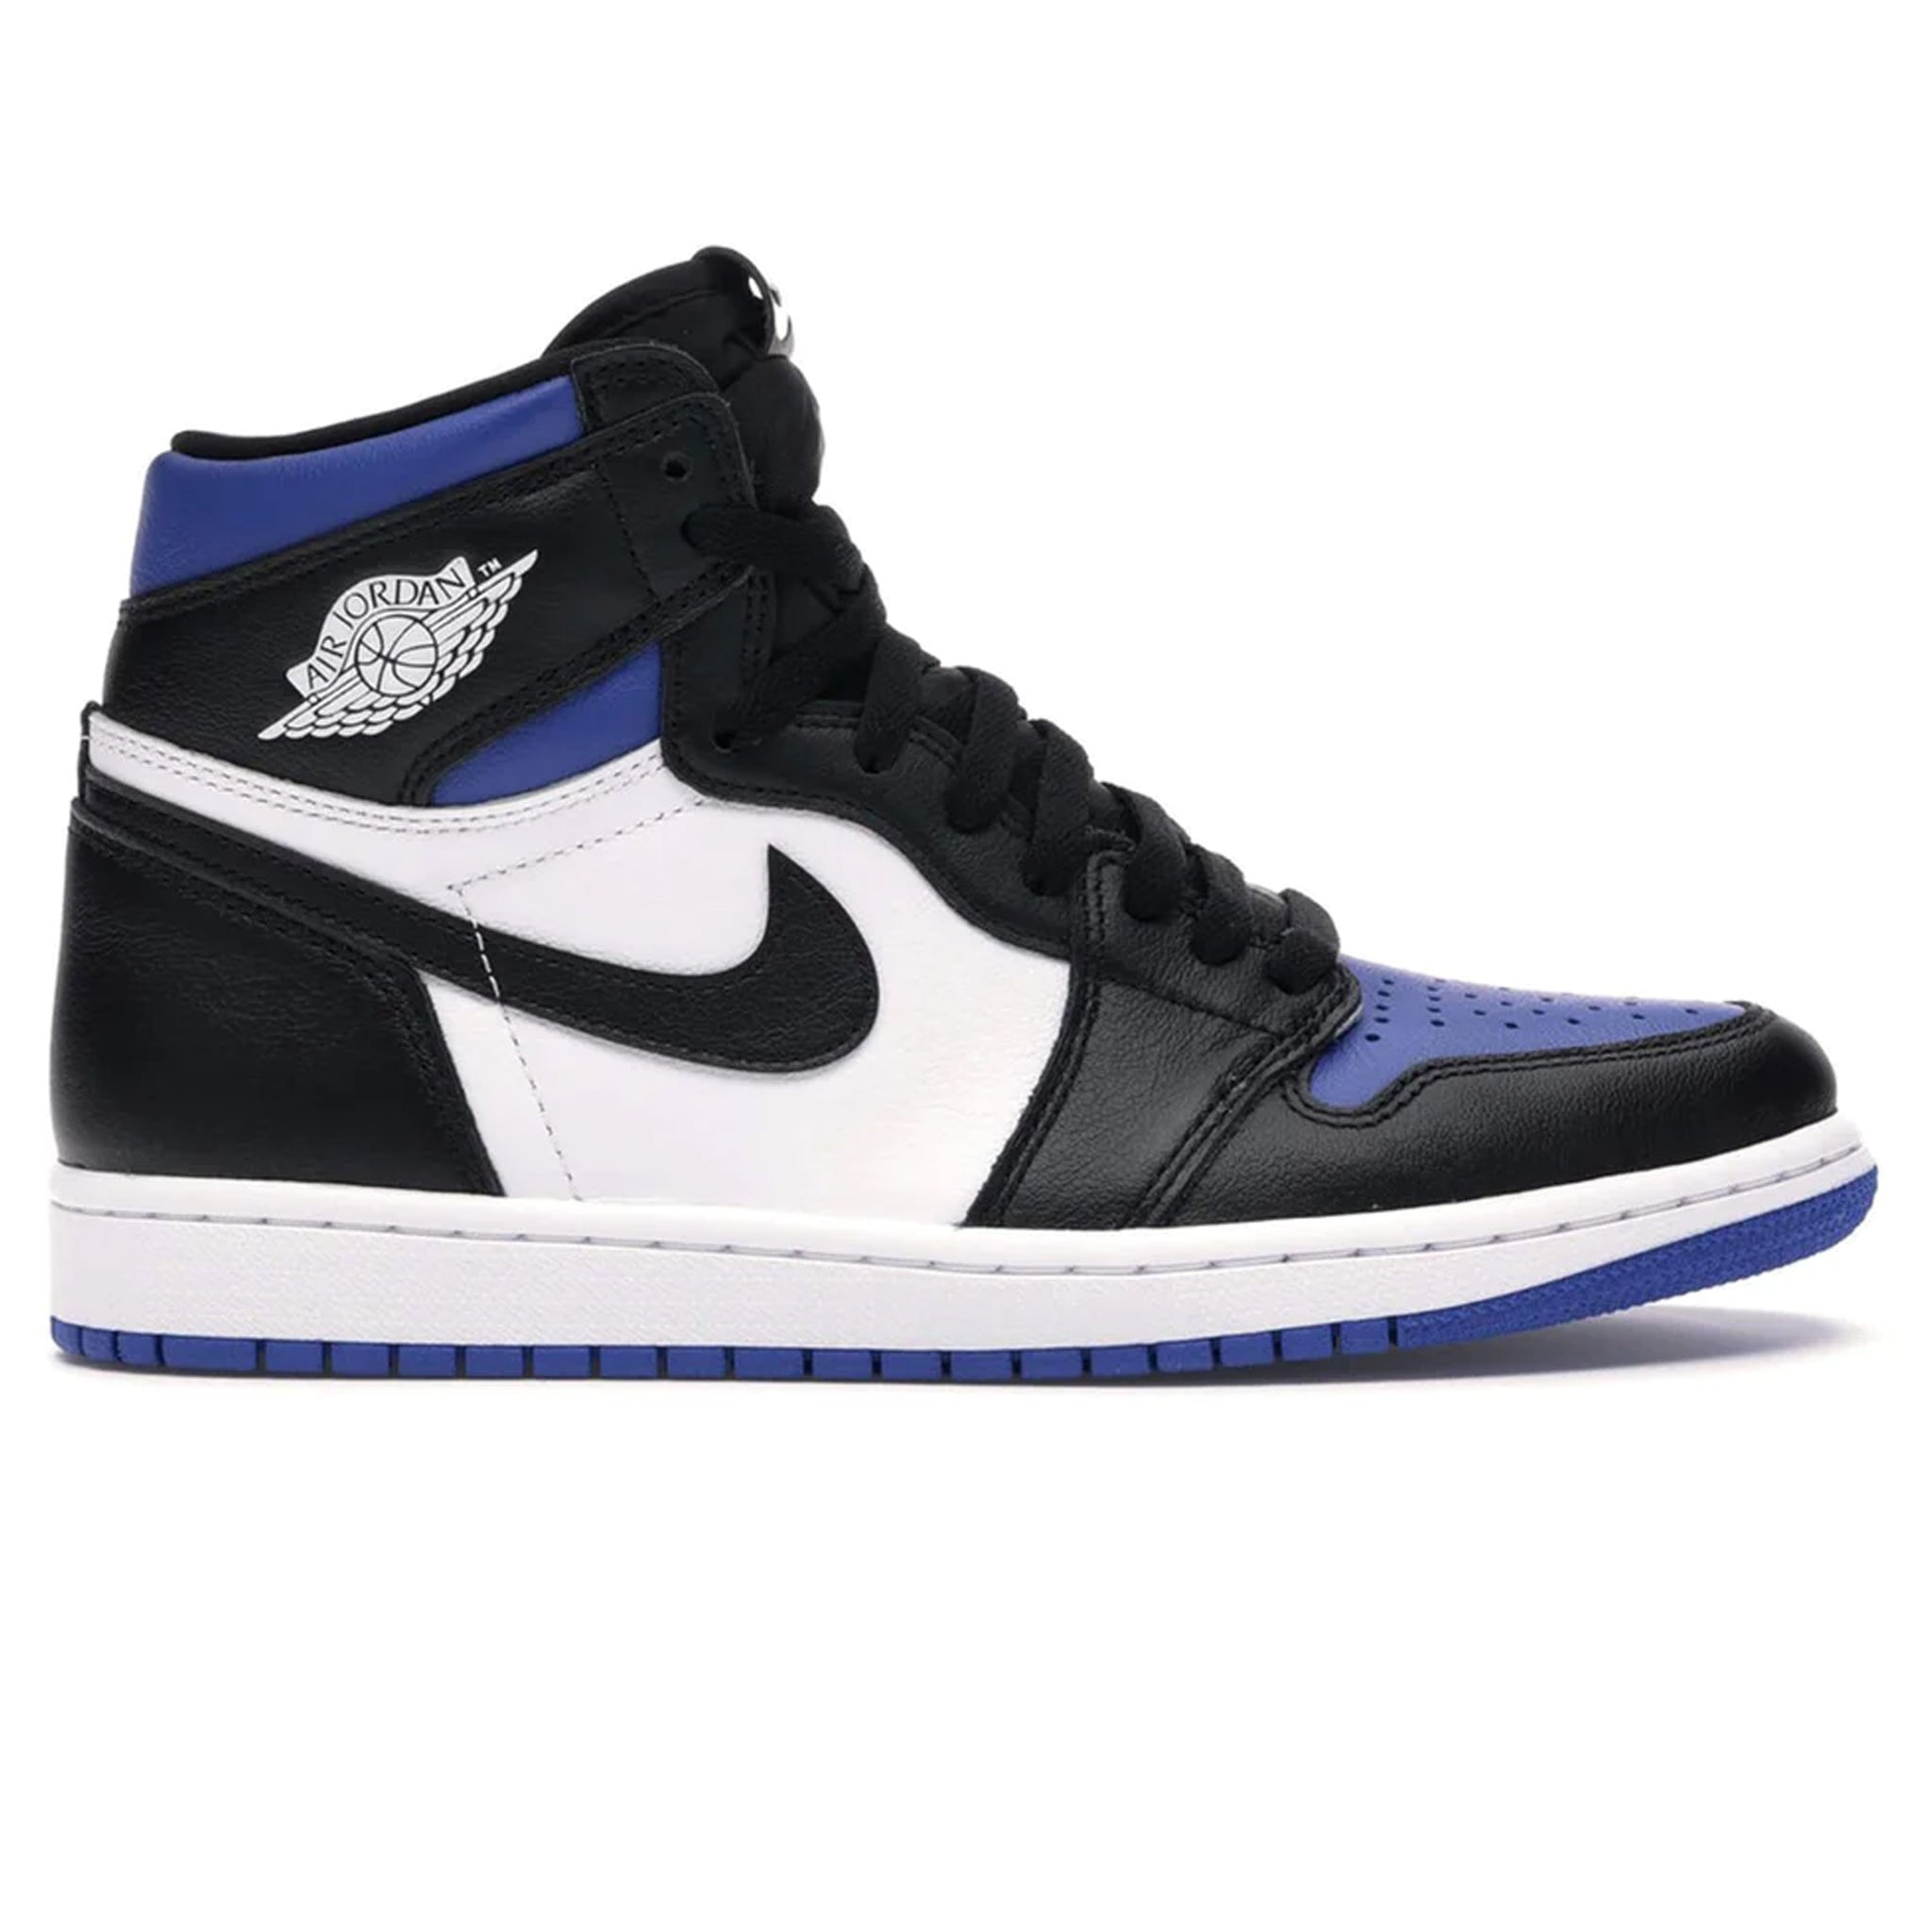 Side view of Air Jordan 1 Royal Toe Sneaker 555088-041